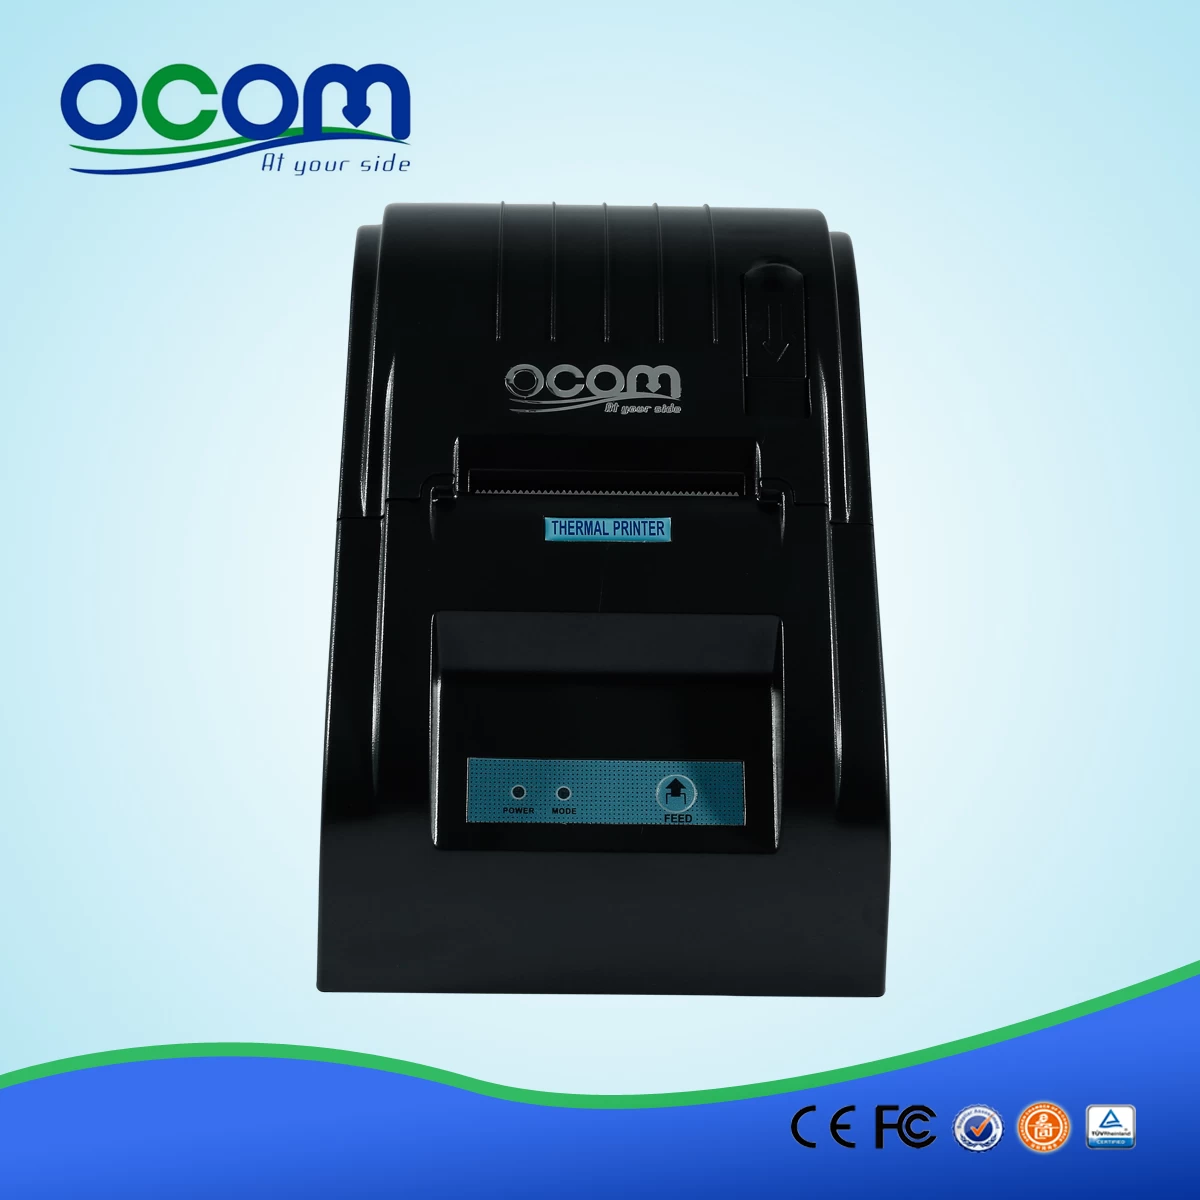 Mini Desktop 58MM Thermal Printer--OCPP-585